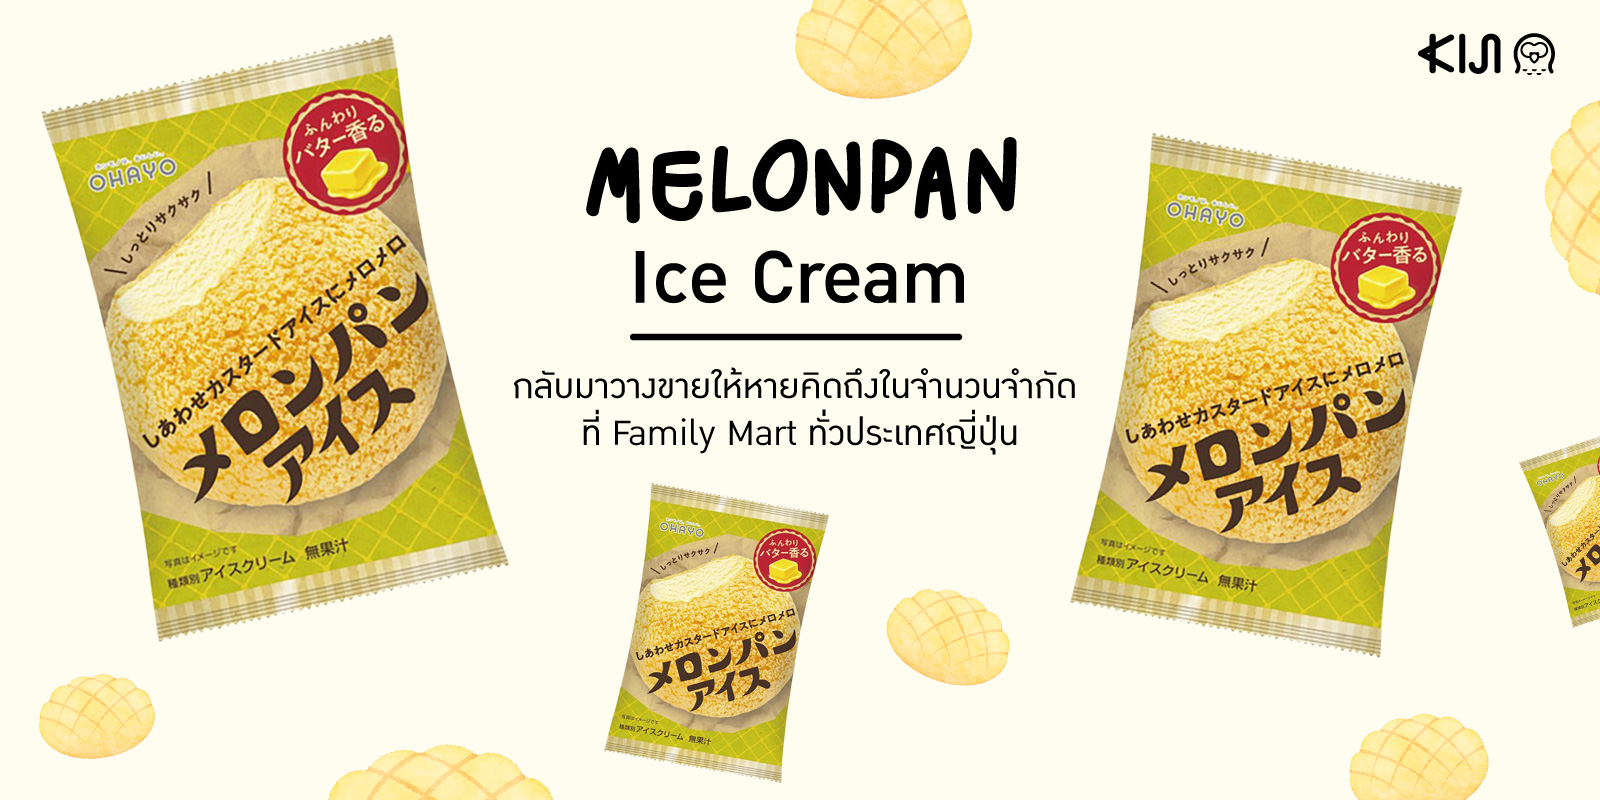 Melonpan Ice Cream ไอศกรีมเมล่อนปังยอดฮิตกลับมาว่างขายแล้วทั่ว ญี่ปุ่น